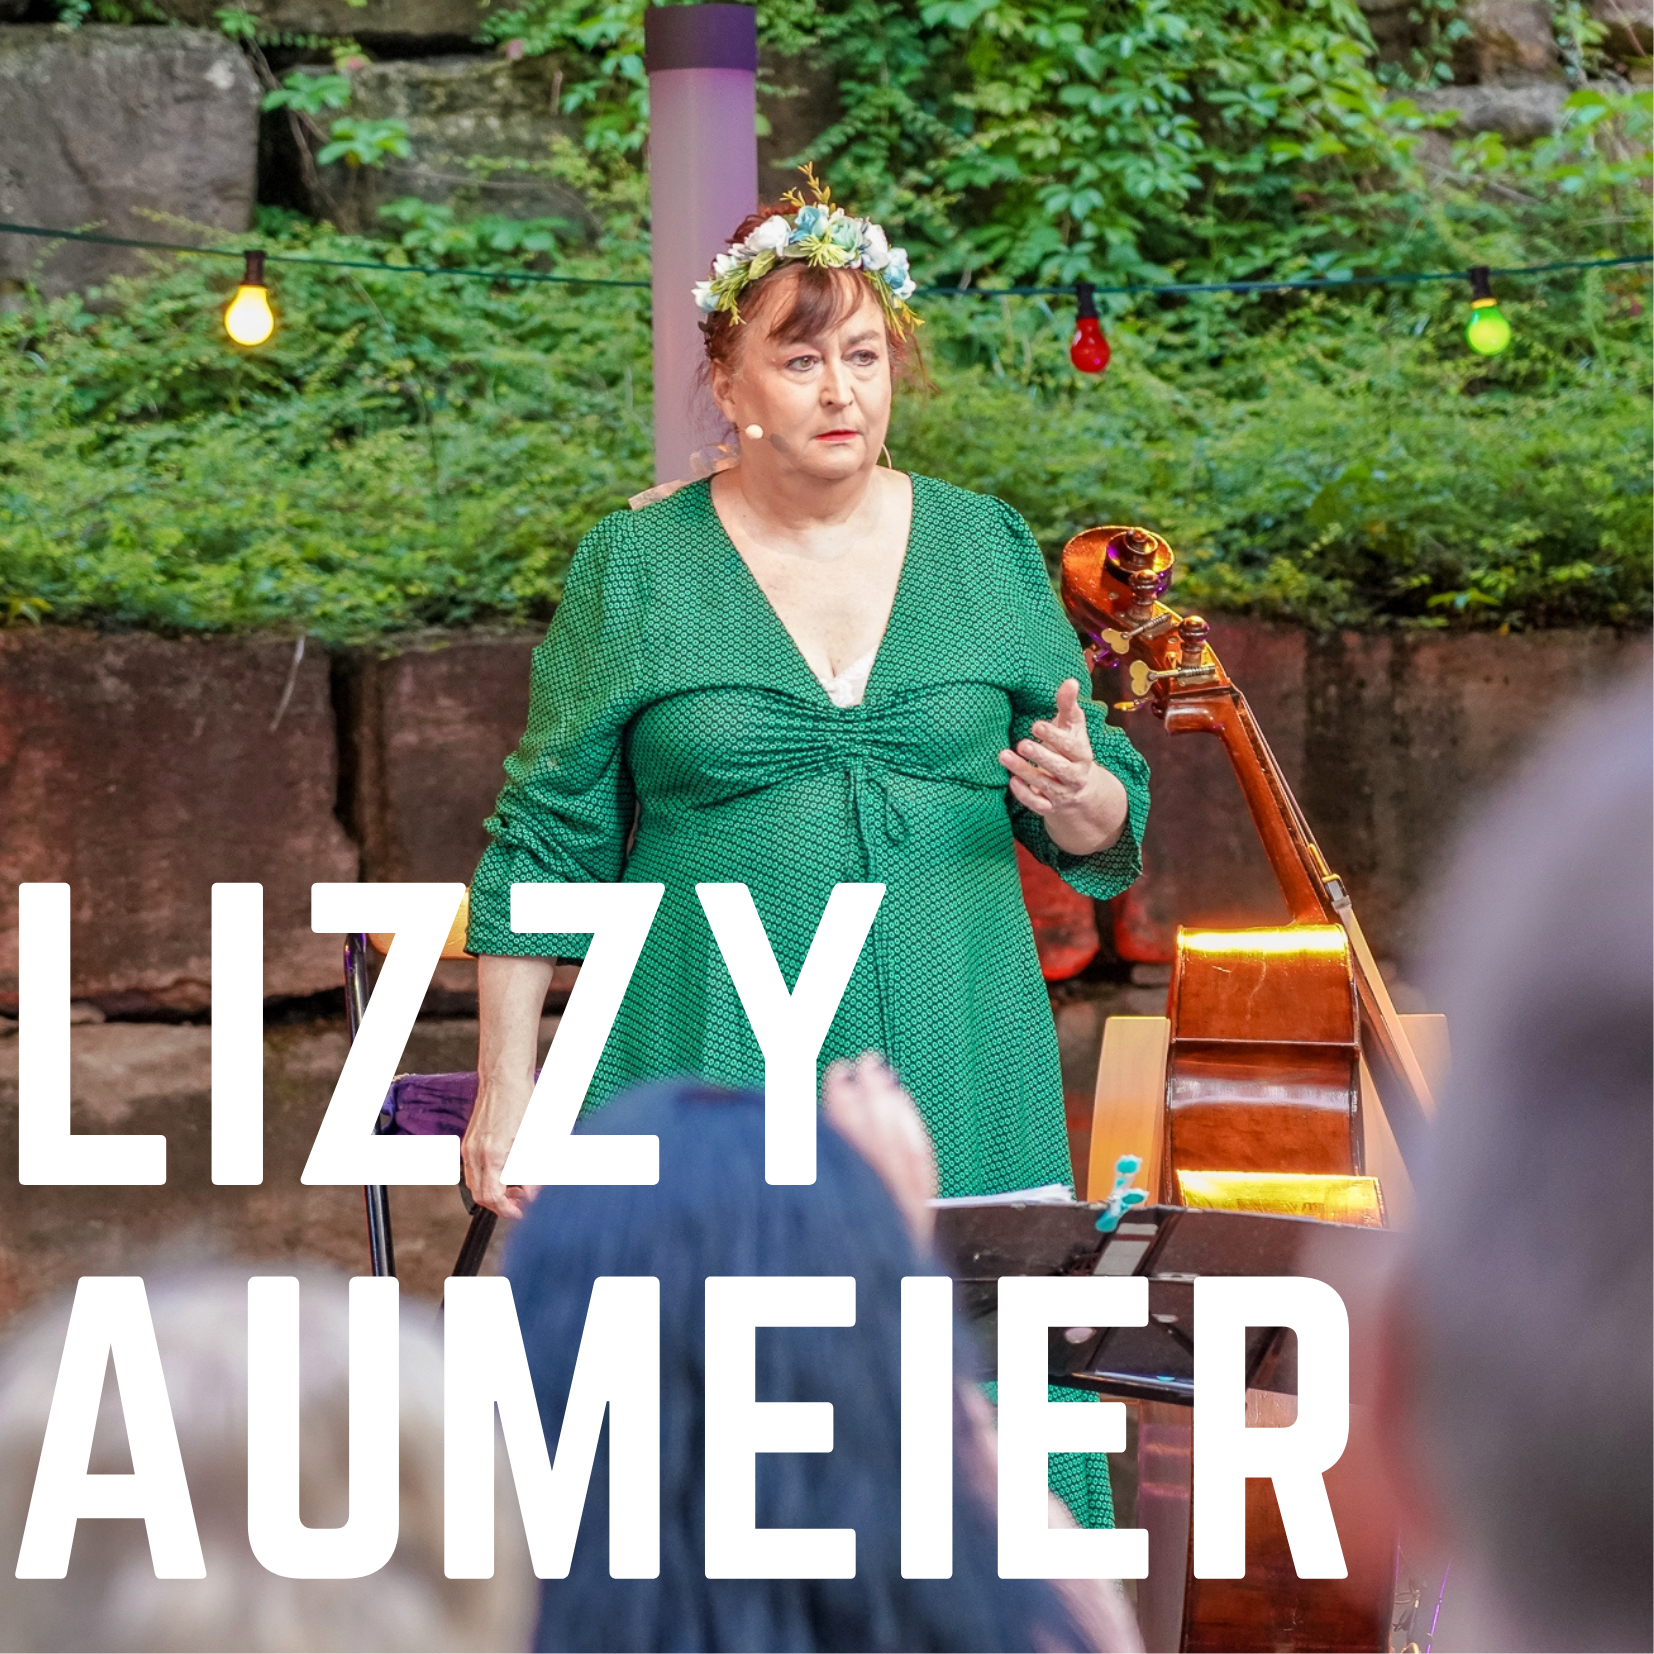 Bild vergrößern: Der Name der Künstlerin "Lizzy Auermeier" ist in weißen Blockbuchstaben auf dem Foto zu sehen. Im Hintergrund ist die Kabarettistin Lizyy Aumeier auf der Open-Air Bühne des Kultursommer 2021 zu sehen.